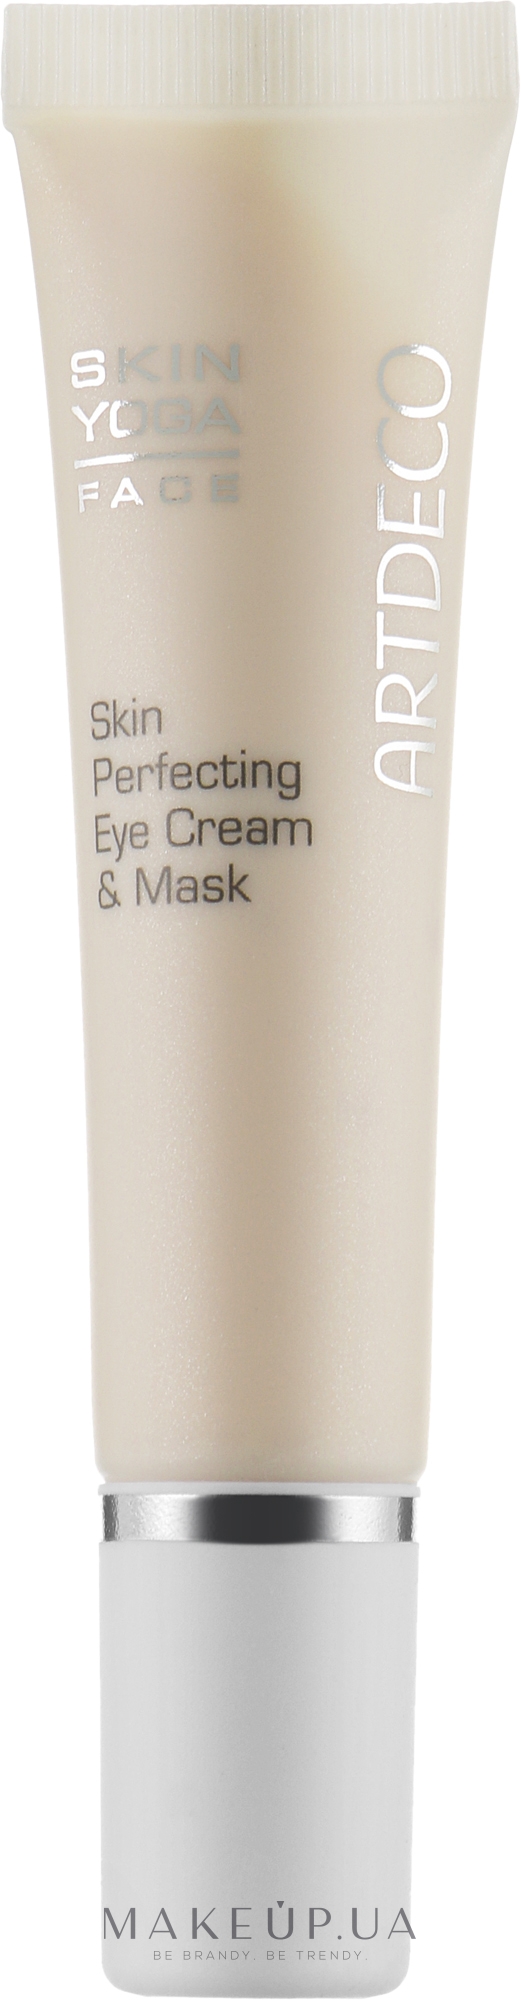 Насыщенный крем для разглаживания кожи вокруг глаз - Artdeco Skin Perfecting Eye Cream & Mask — фото 15ml